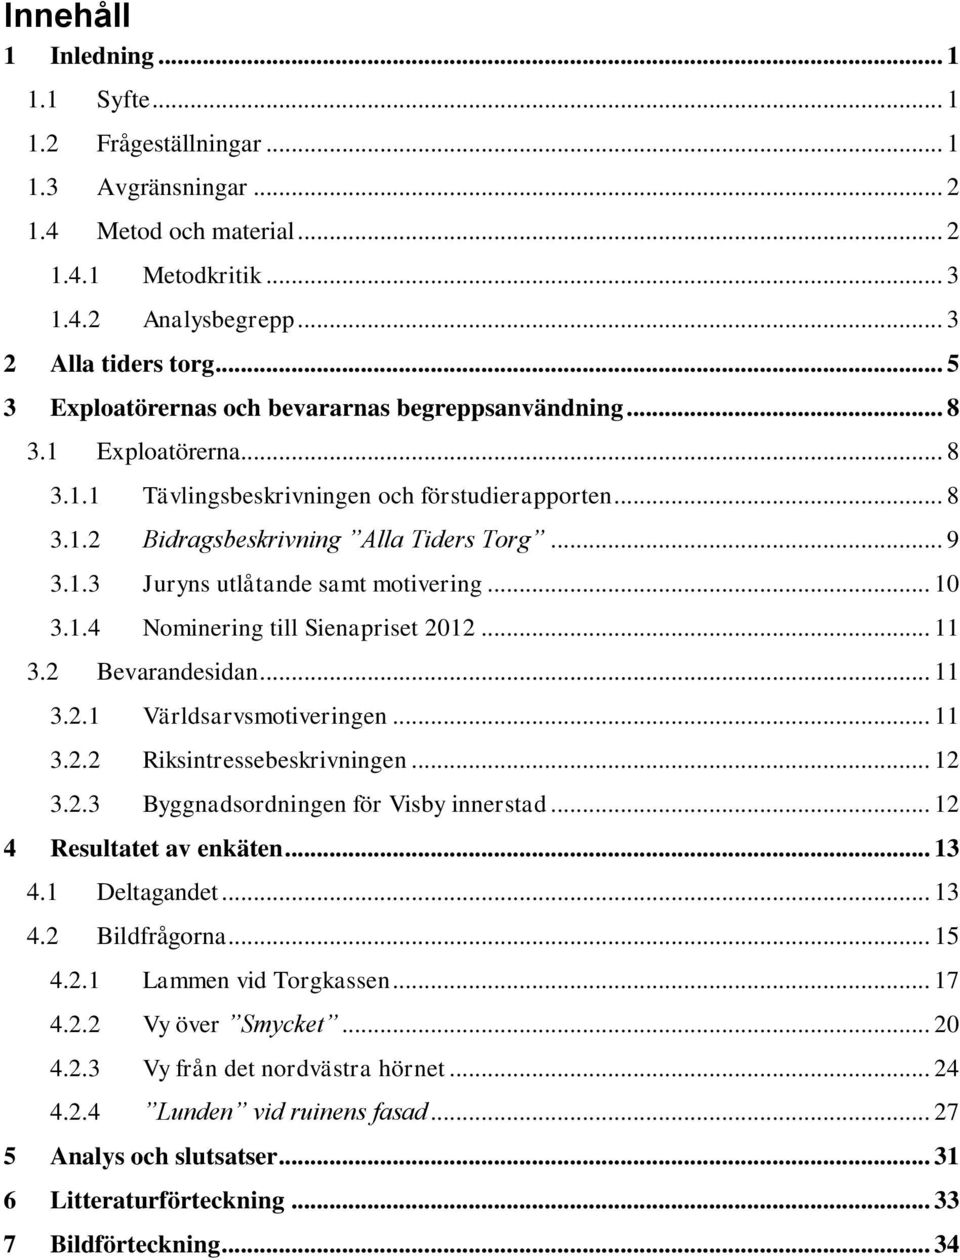 .. 10 3.1.4 Nominering till Sienapriset 2012... 11 3.2 Bevarandesidan... 11 3.2.1 Världsarvsmotiveringen... 11 3.2.2 Riksintressebeskrivningen... 12 3.2.3 Byggnadsordningen för Visby innerstad.